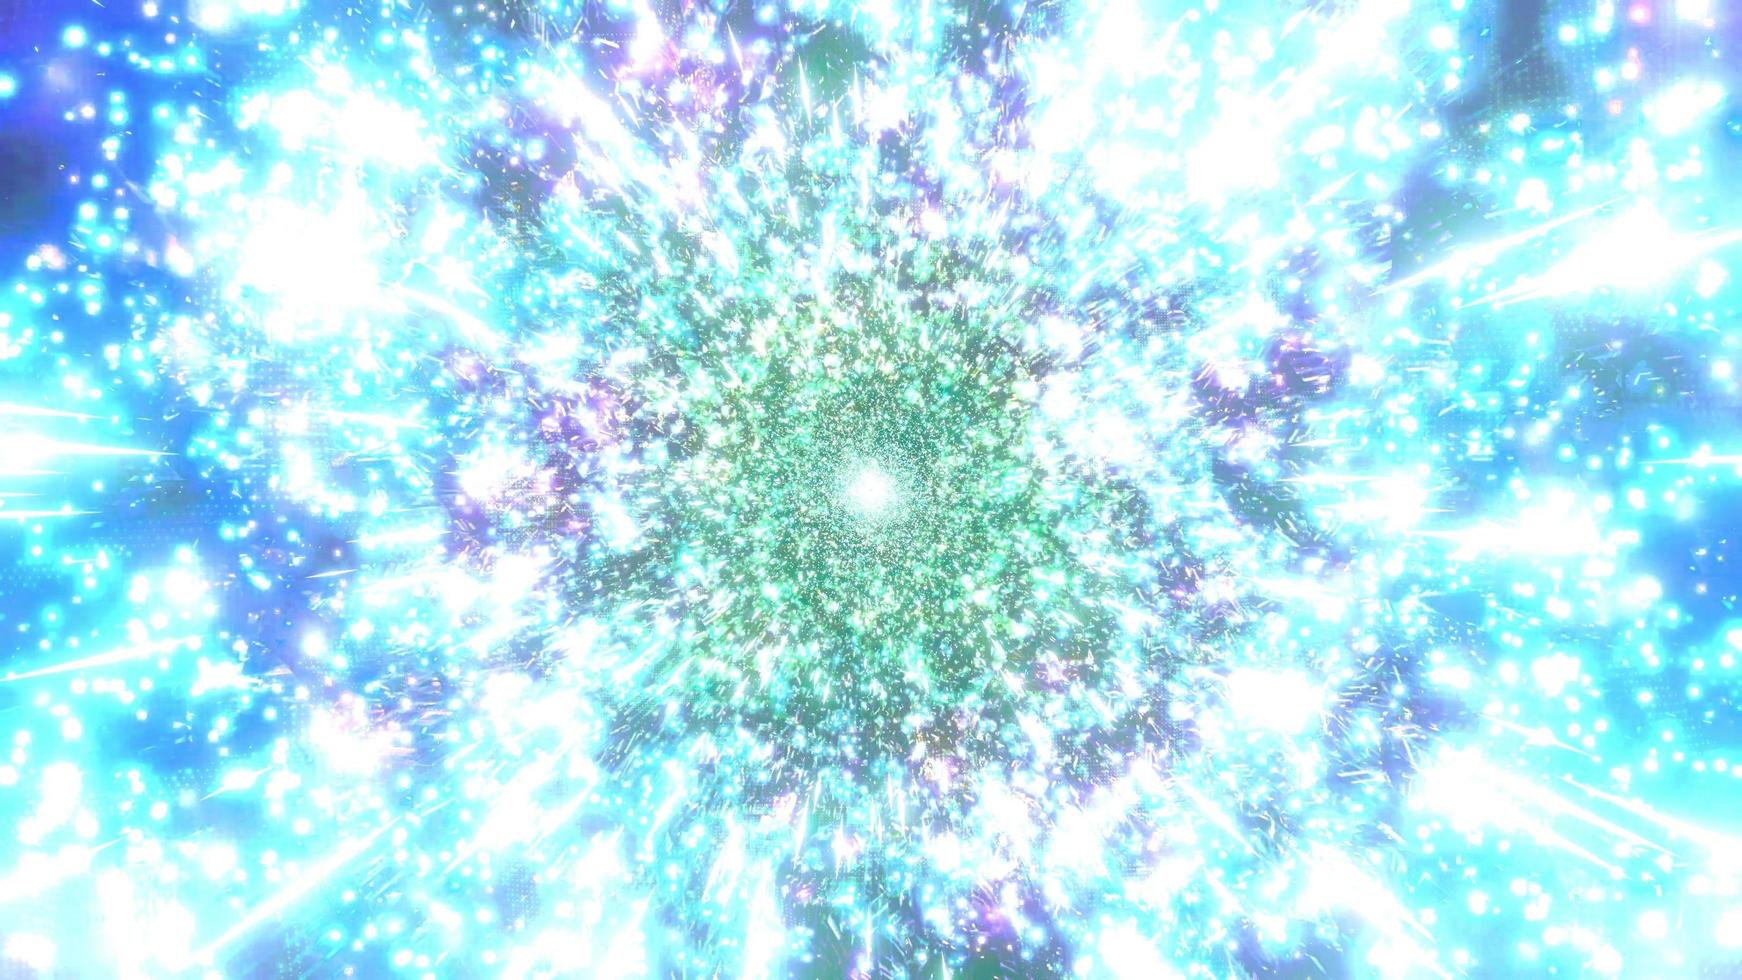 grönt, blått och vitt ljus och former kalejdoskop 3d illustration för bakgrund eller tapet foto